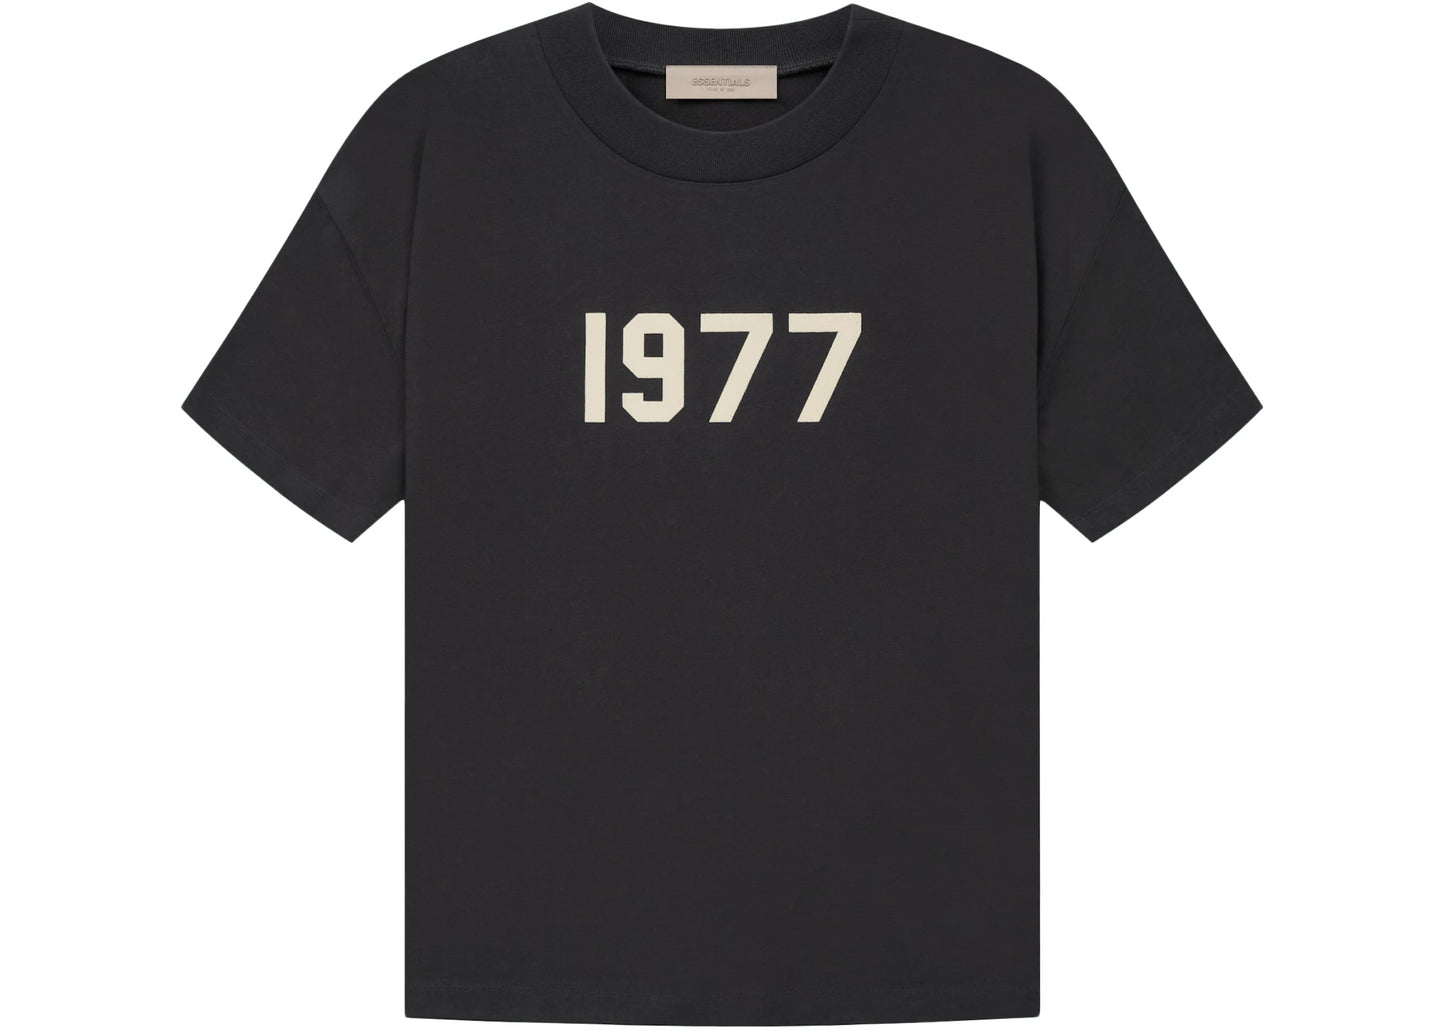 Fear of God Essentials Women's 1977 T-shirt Iron